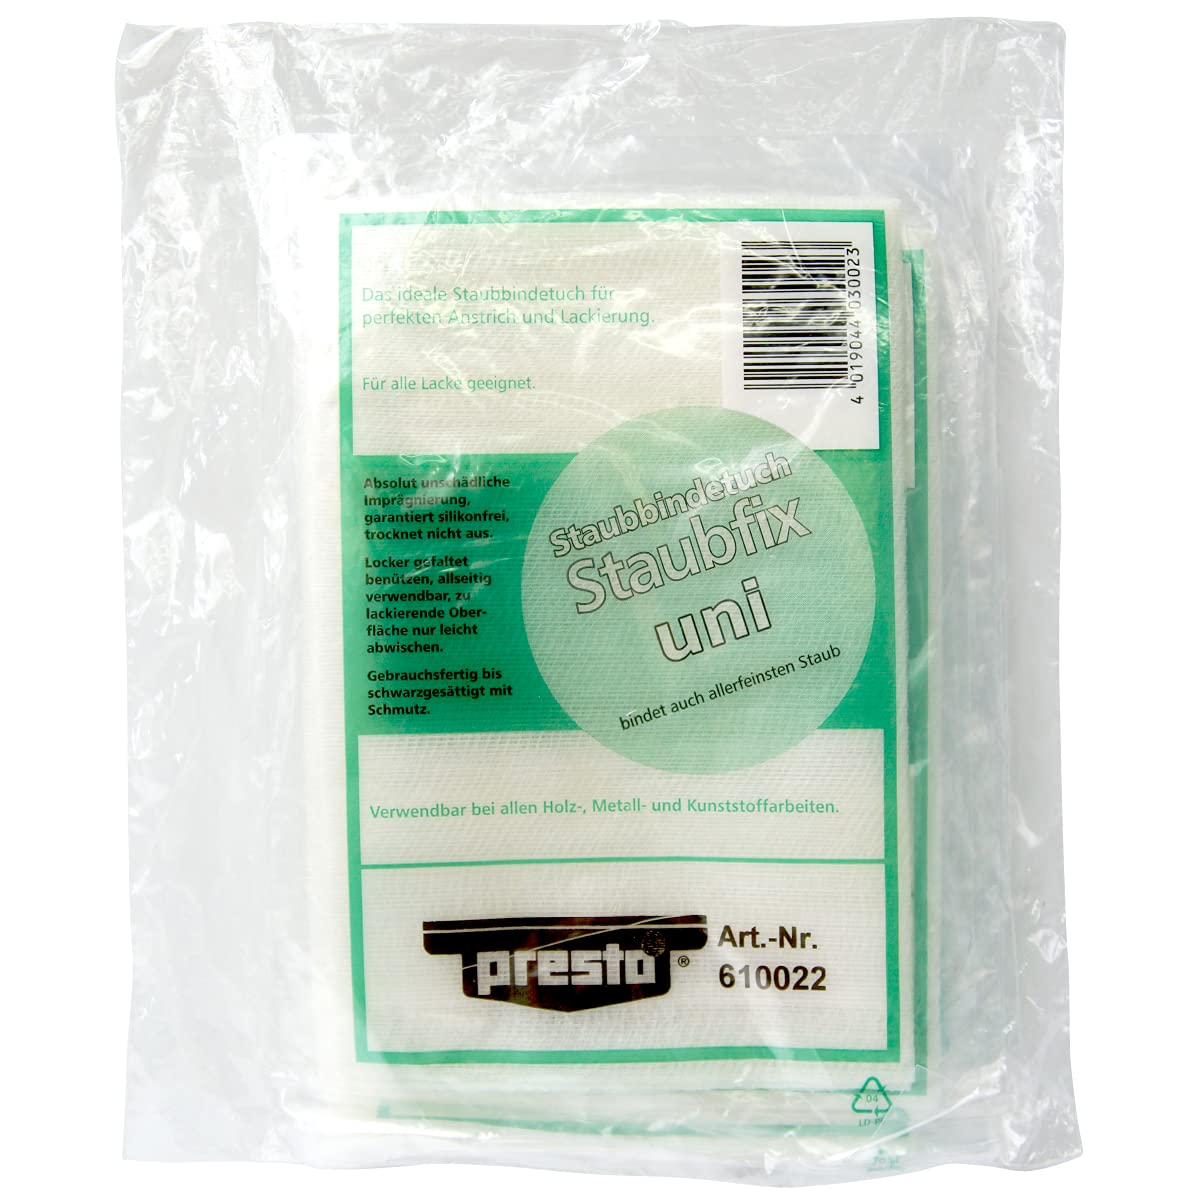 presto 610022 Staubbindetücher (Polybeutel à 5 Stück) von Presto